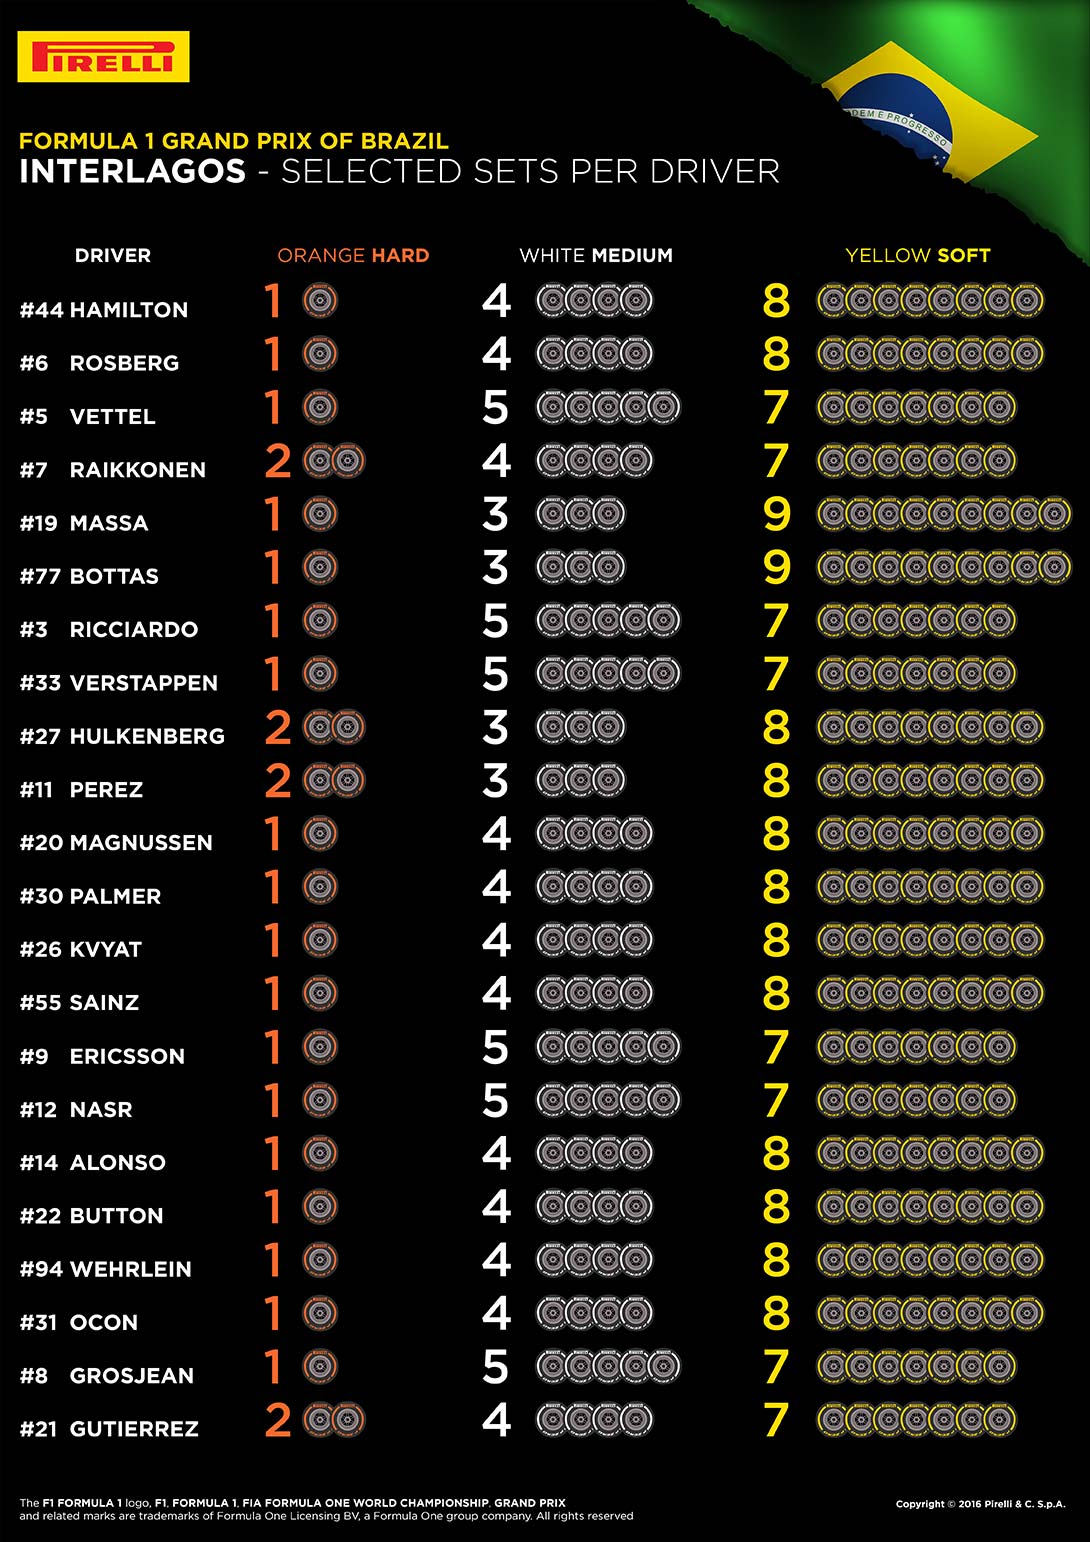 Le scelte dei piloti in vista del Gran Premio del Brasile (foto da: hub.pirelli.com)